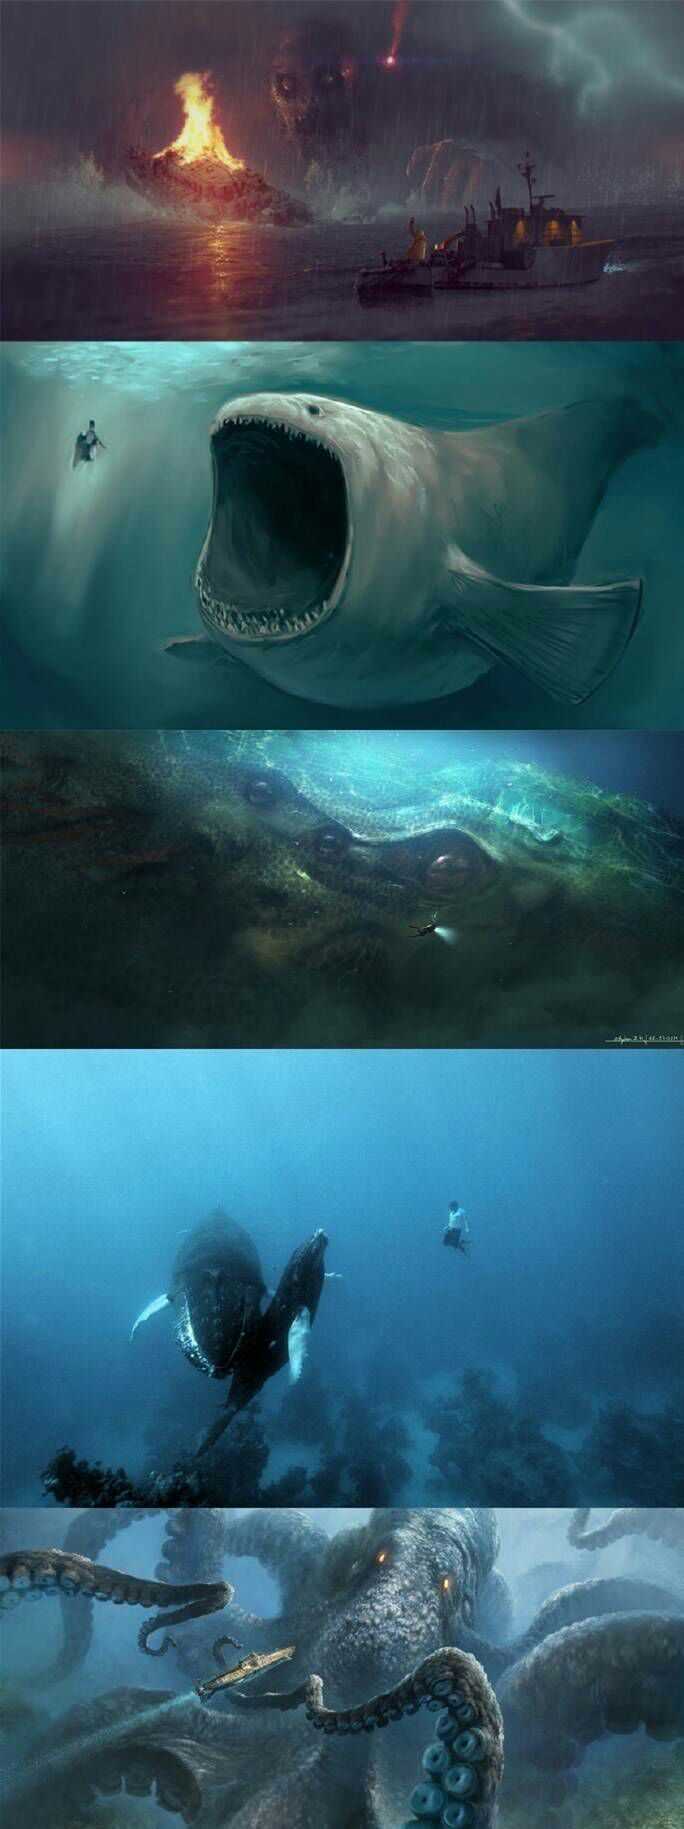 有哪些关于深海或者海怪的图片(越恐怖越诡异越好)?